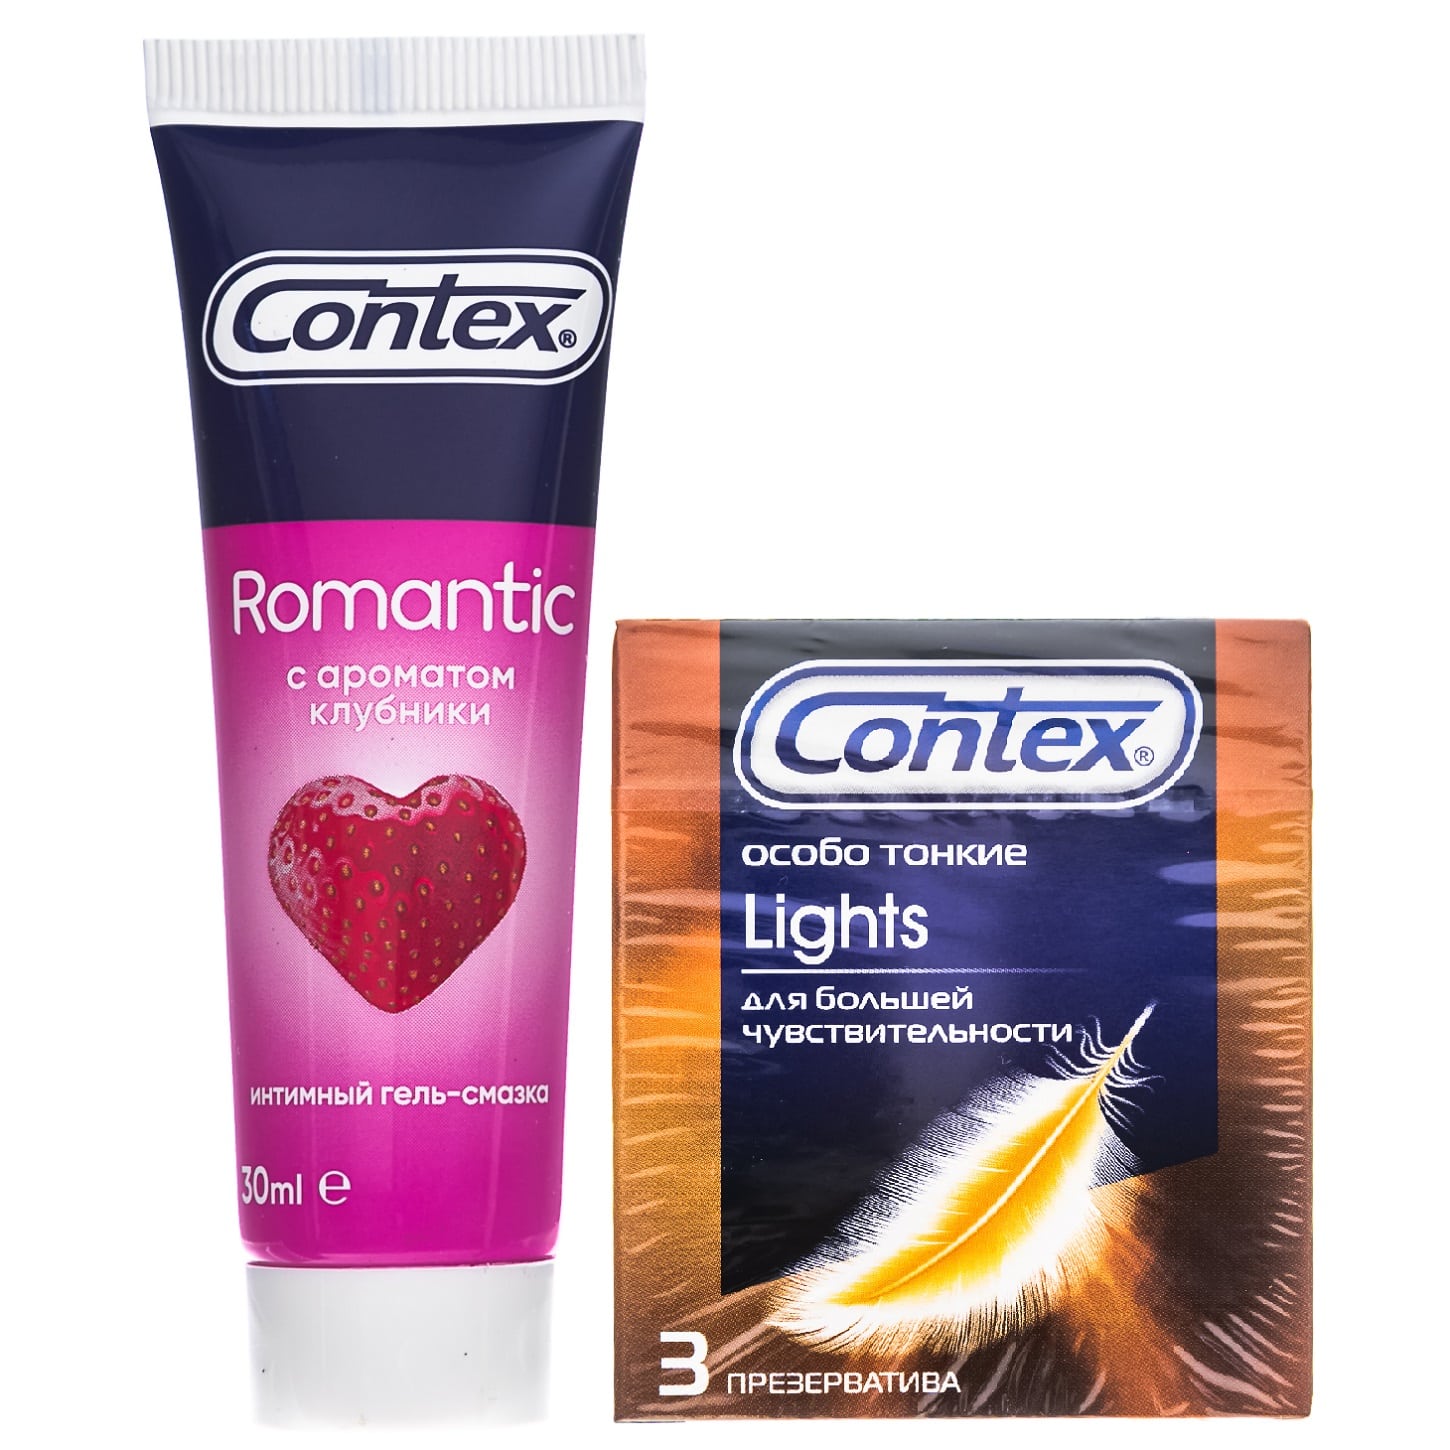 Contex Набор: презервативы Light особо тонкие №3 + гель-смазка Romantic 30 мл (Contex, Презервативы)